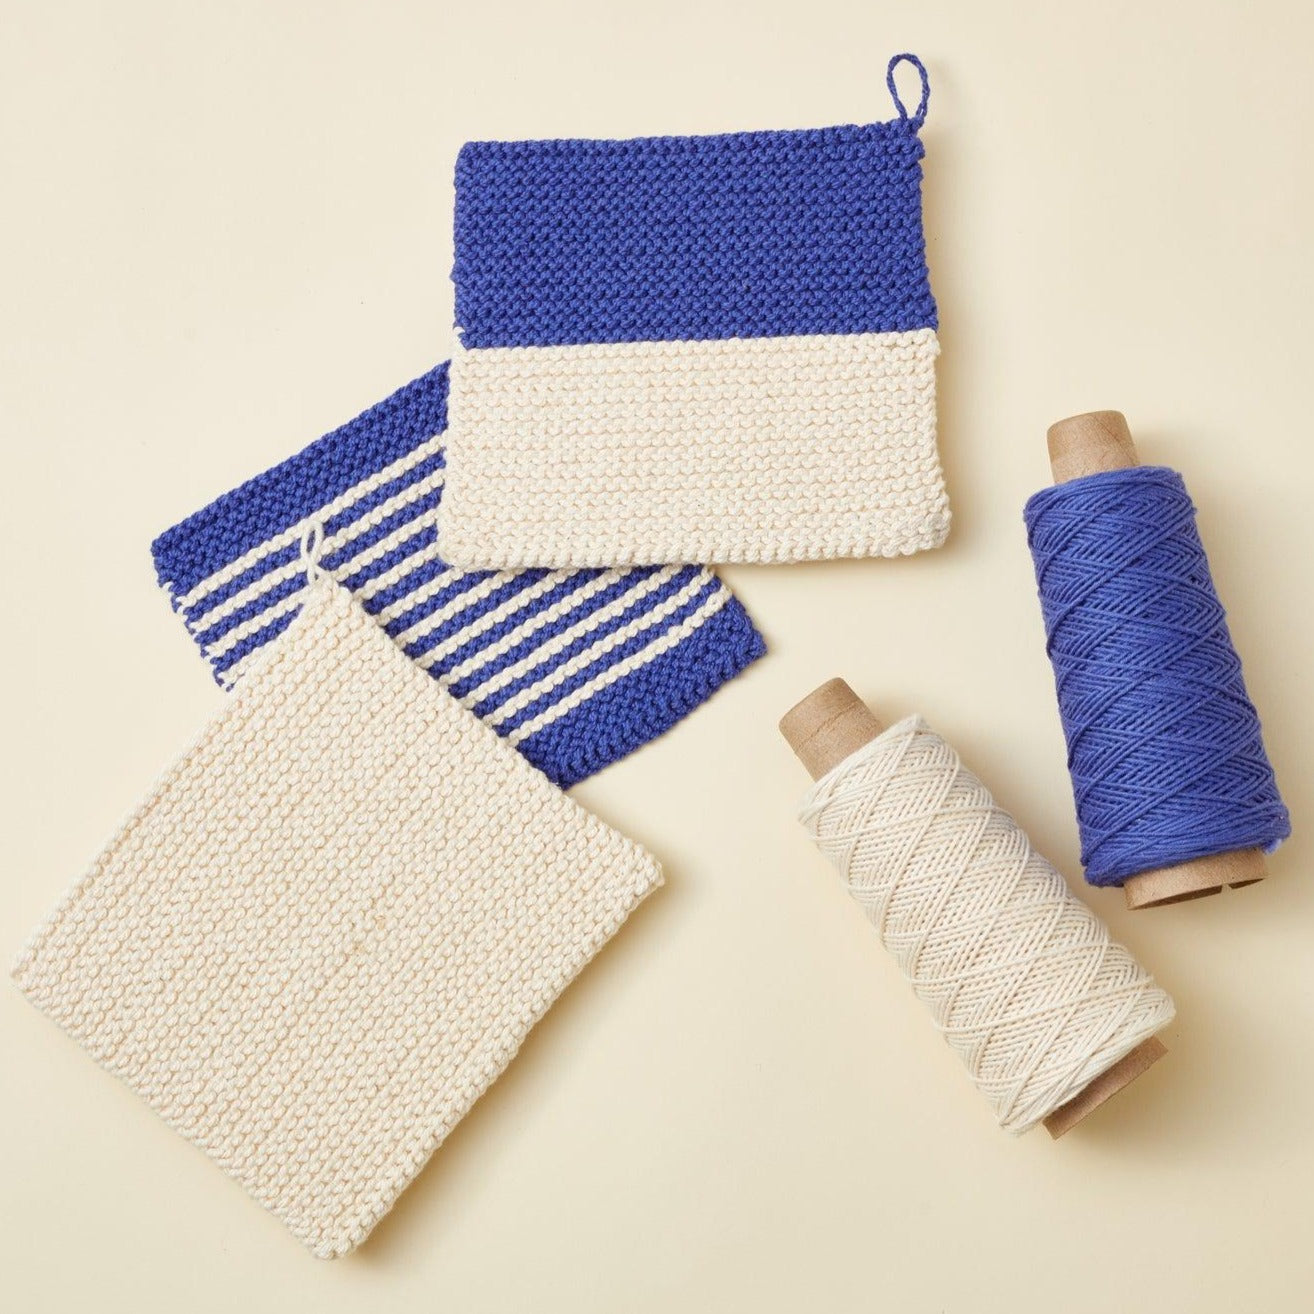 Knitting Kits For Beginners